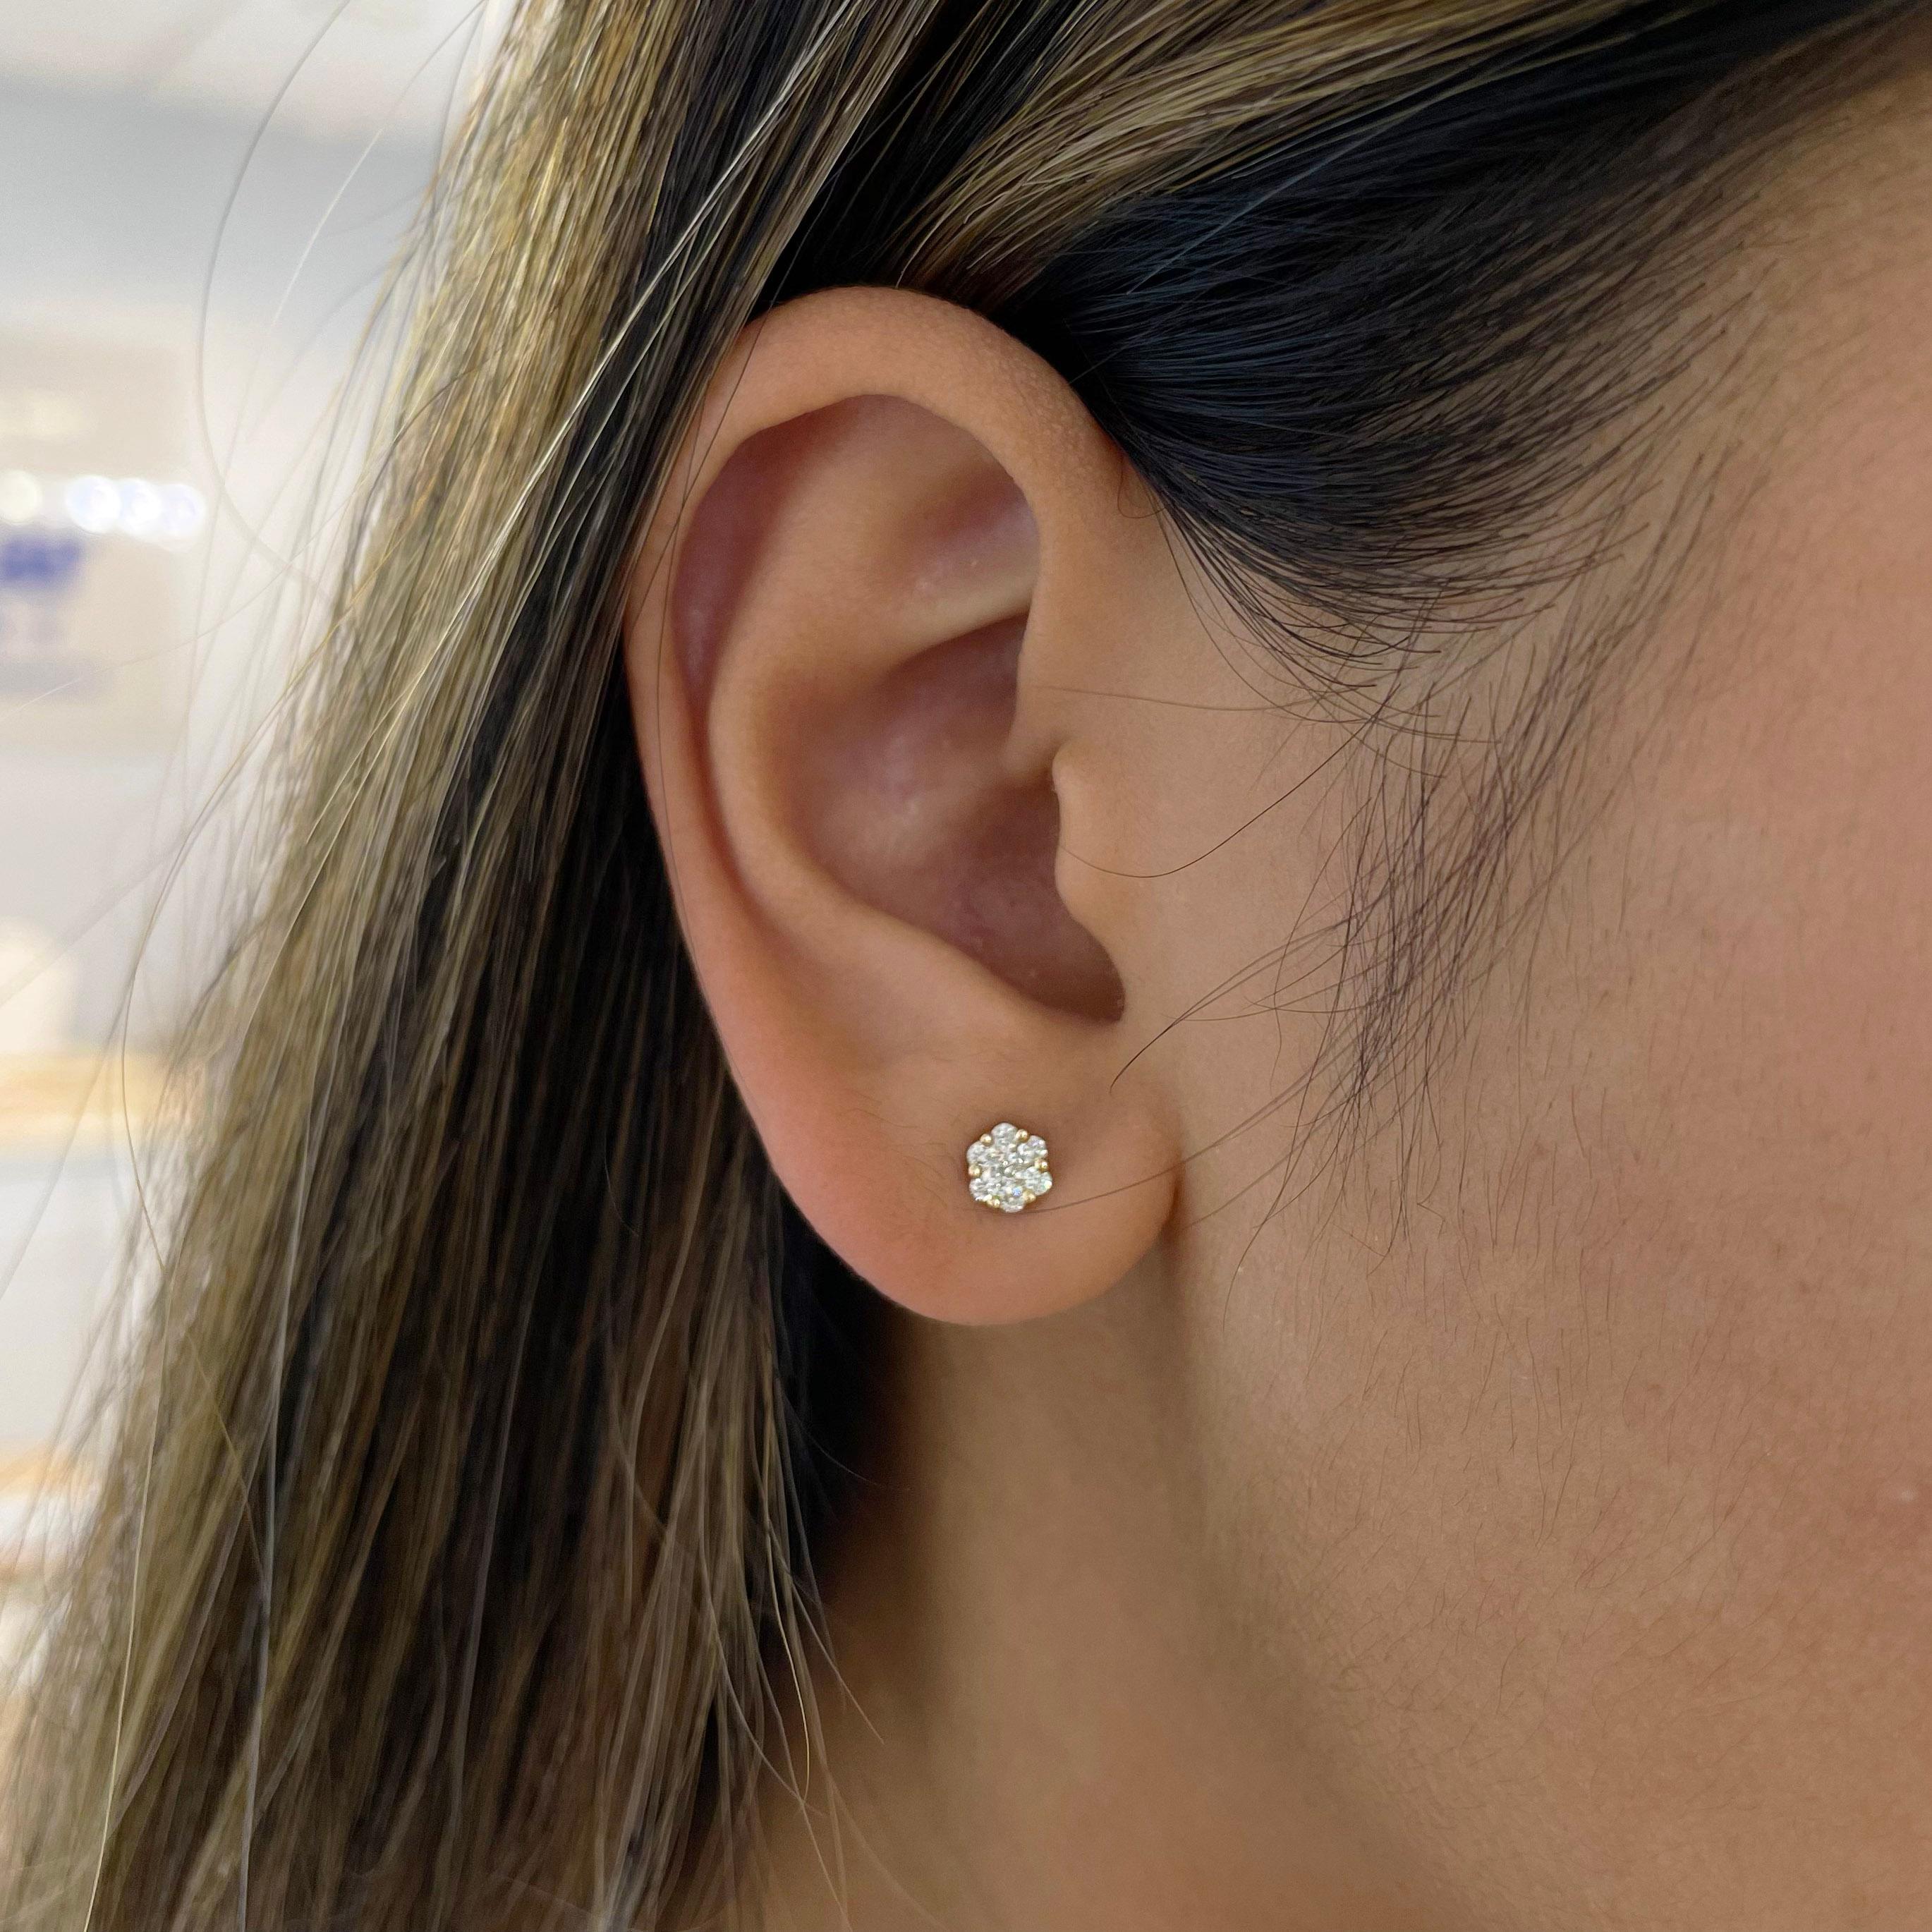 Les boucles d'oreilles en diamant sont le meilleur complément à toute collection de bijoux. Ces clous d'oreilles en diamant sont de la même taille que des clous d'oreilles de 1/2 carat, rendus abordables par la petite grappe florale de diamants. Le